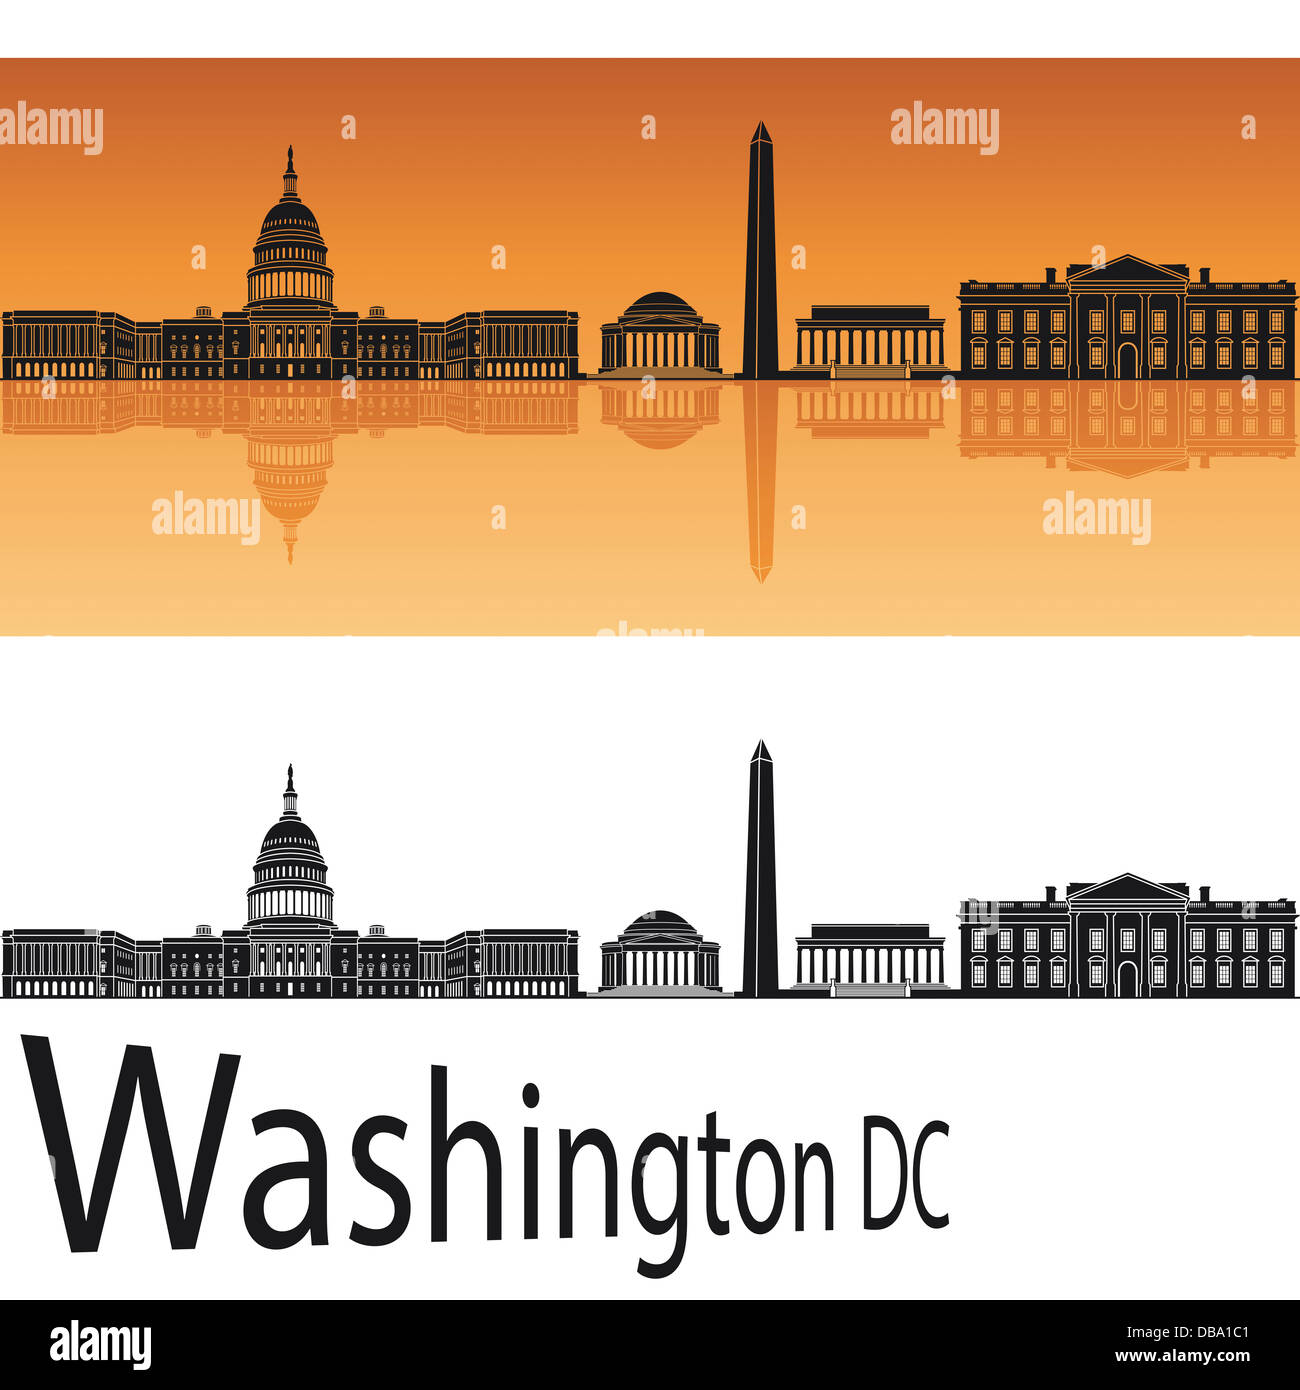 Washington DC skyline in orange background Stock Photo